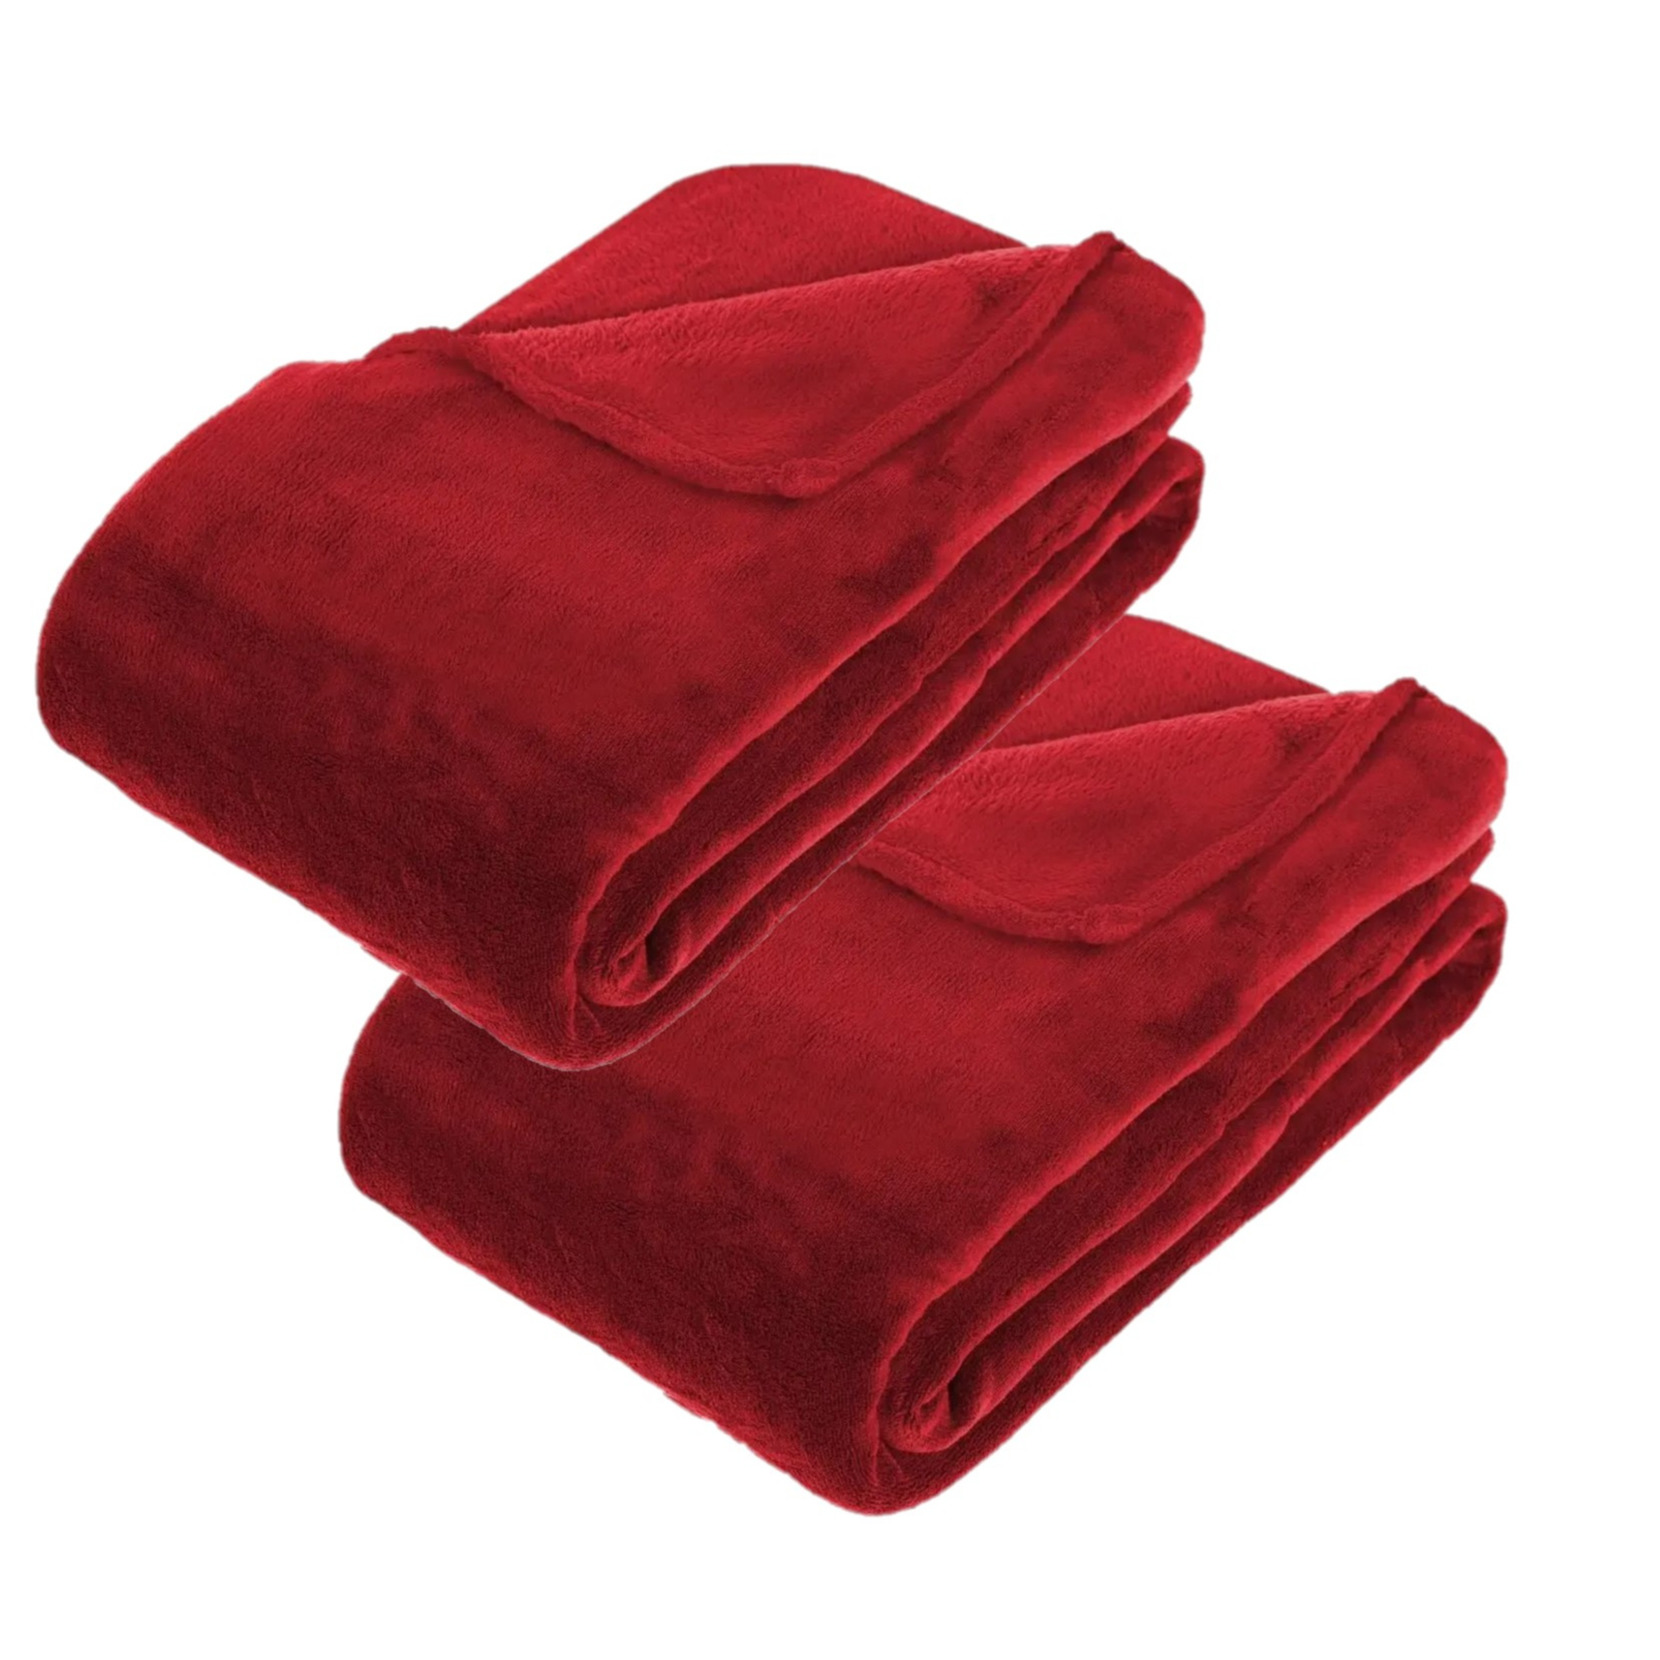 2x Stuks grote Fleece deken-fleeceplaid rood 180 x 230 cm polyester